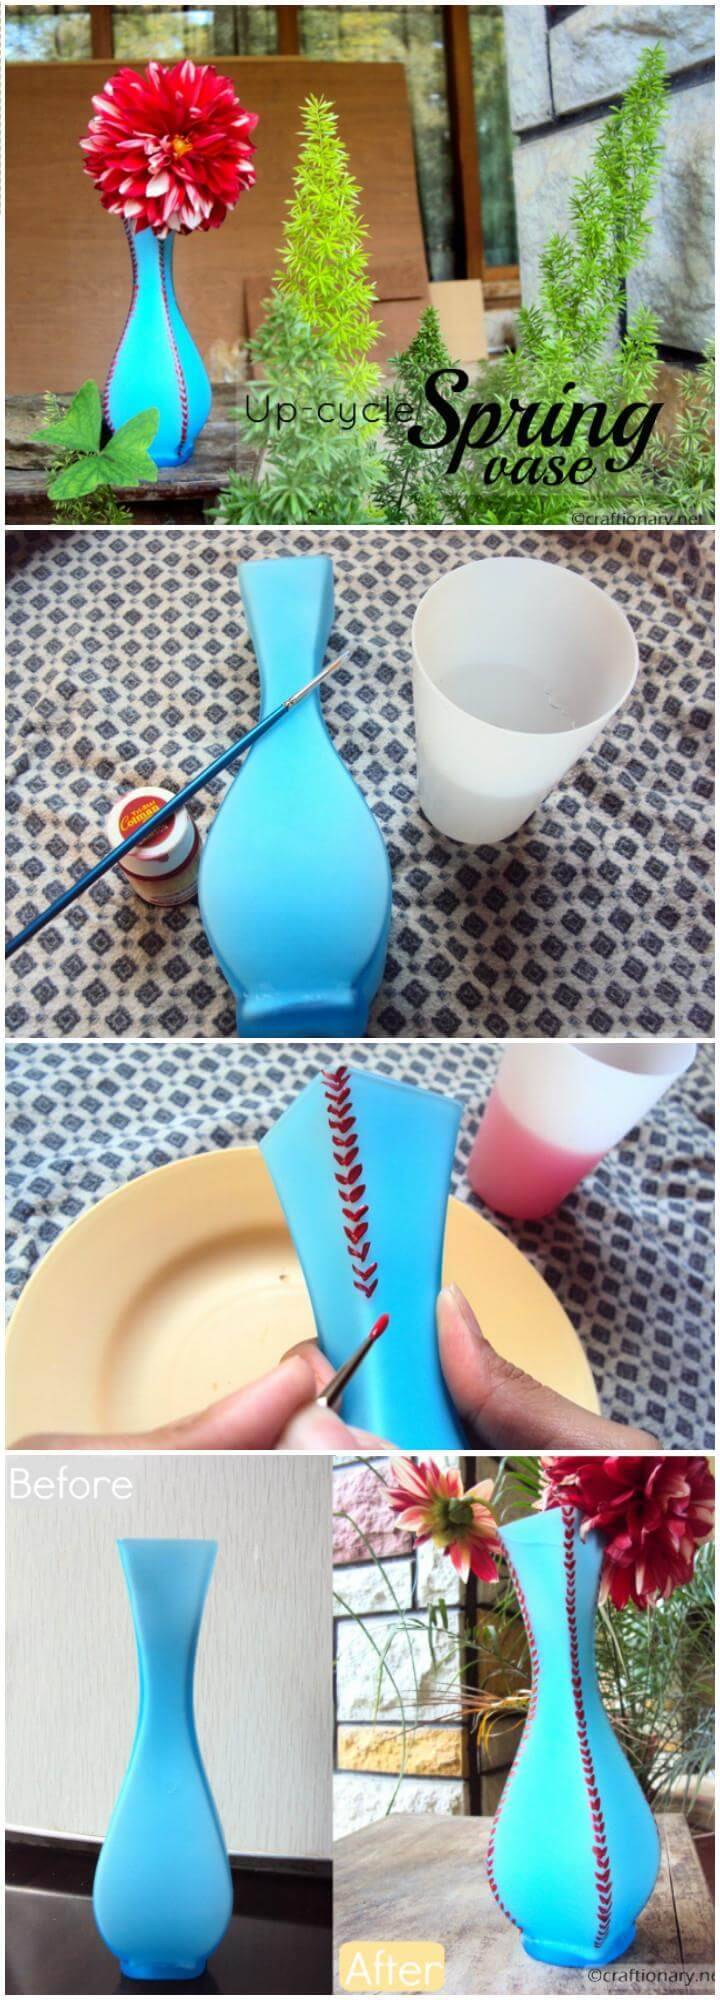 DIY Painting Vases